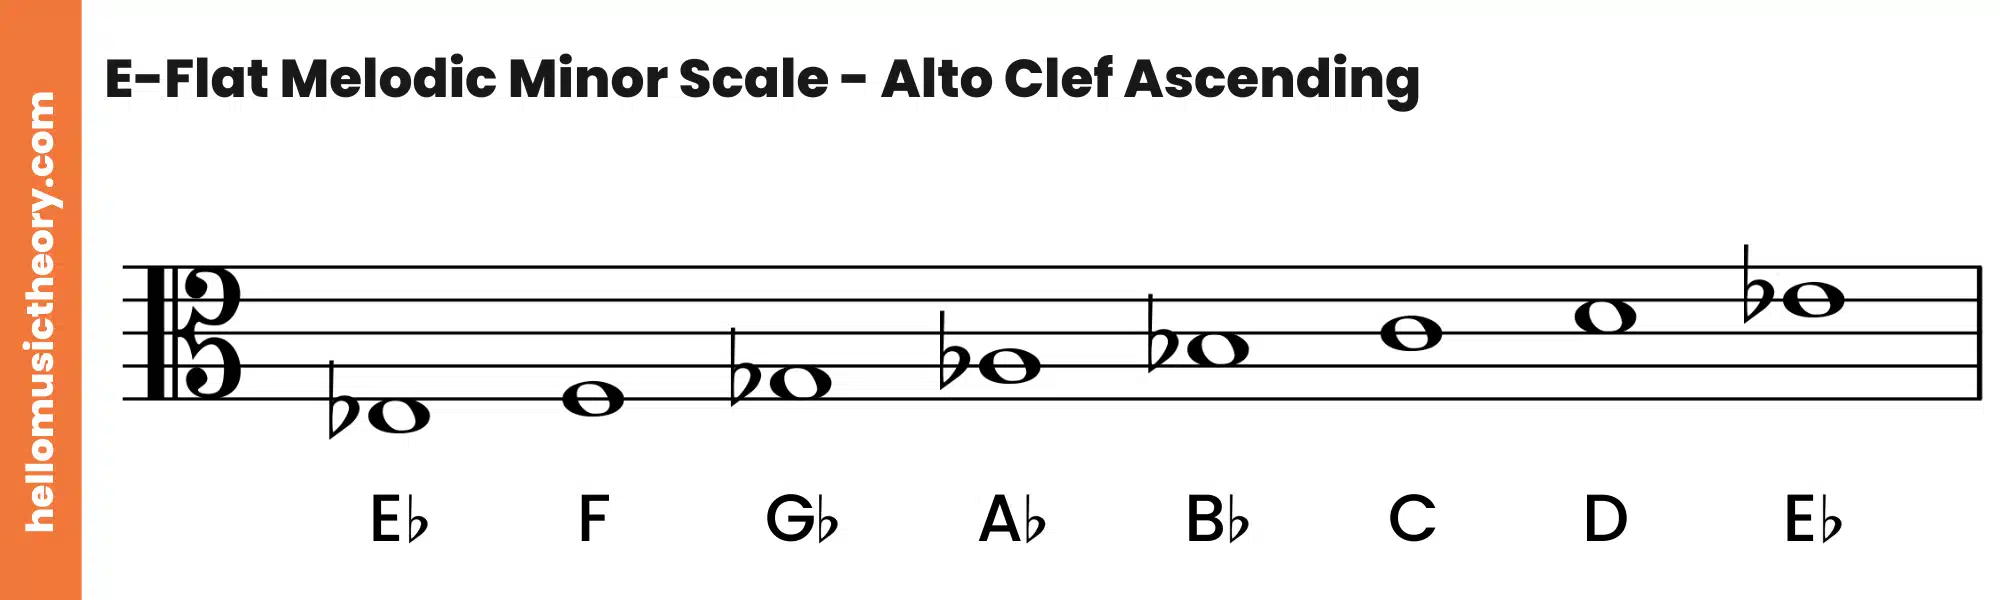 E-Flat Melodic Minor Scale Alto Clef Ascending